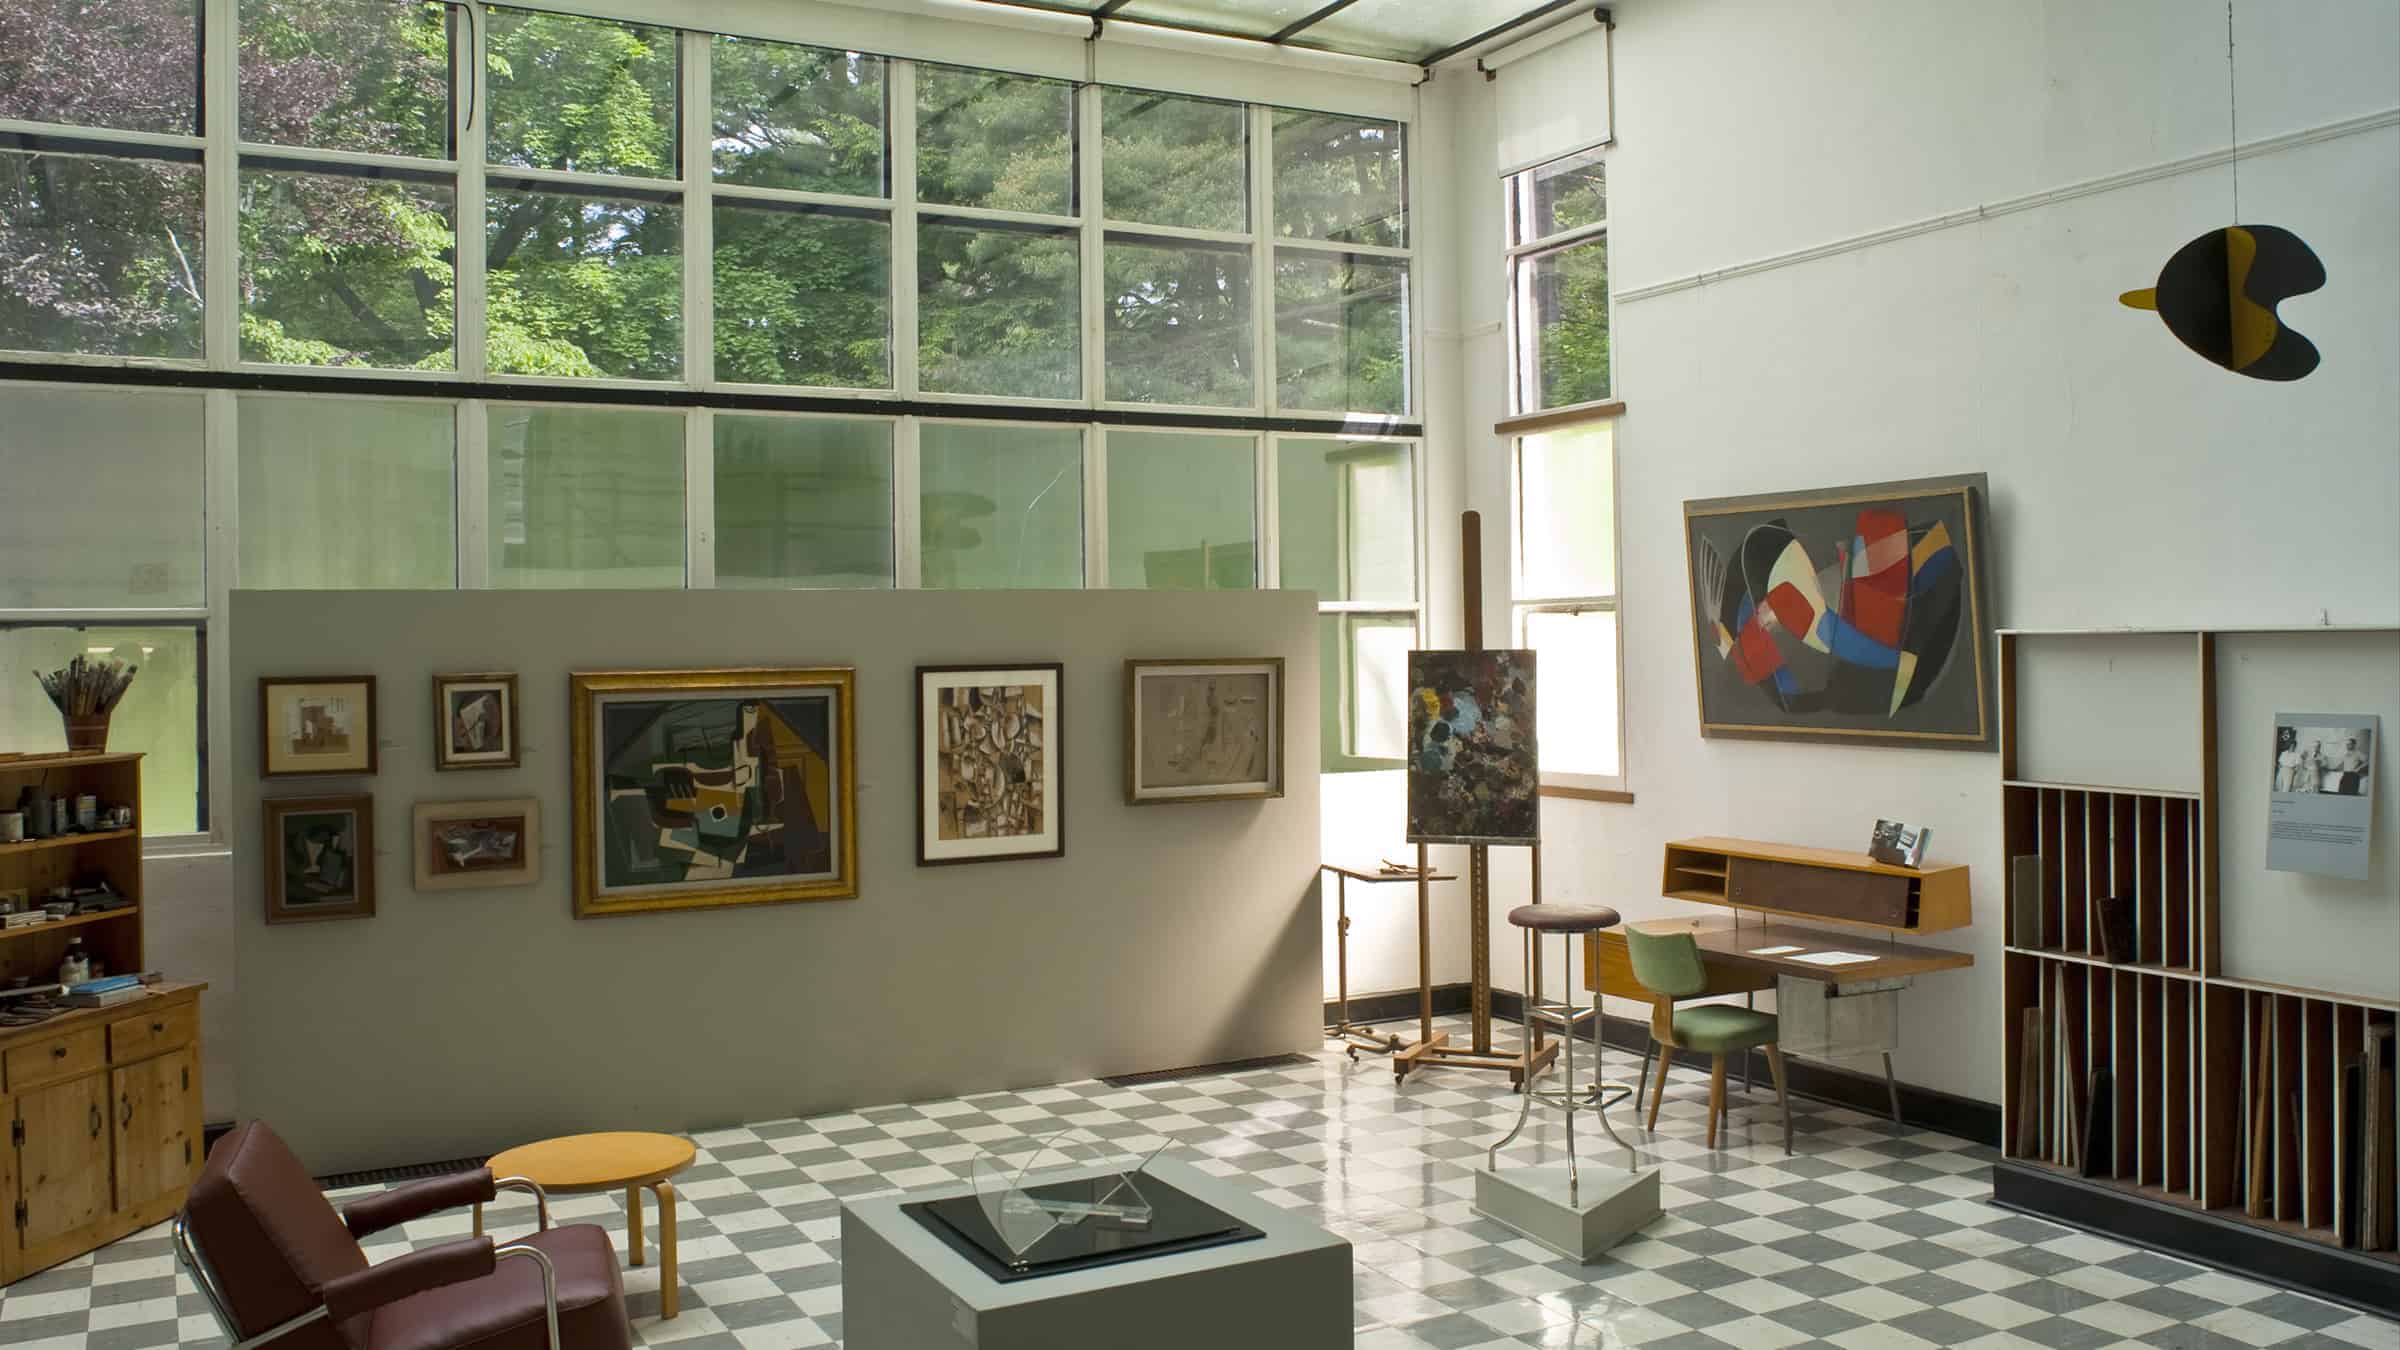 The Frelinghuysen Morris House and Studio in Lenox celebrates Modern art. Photo courtesy of Kinney Frelinghuysen